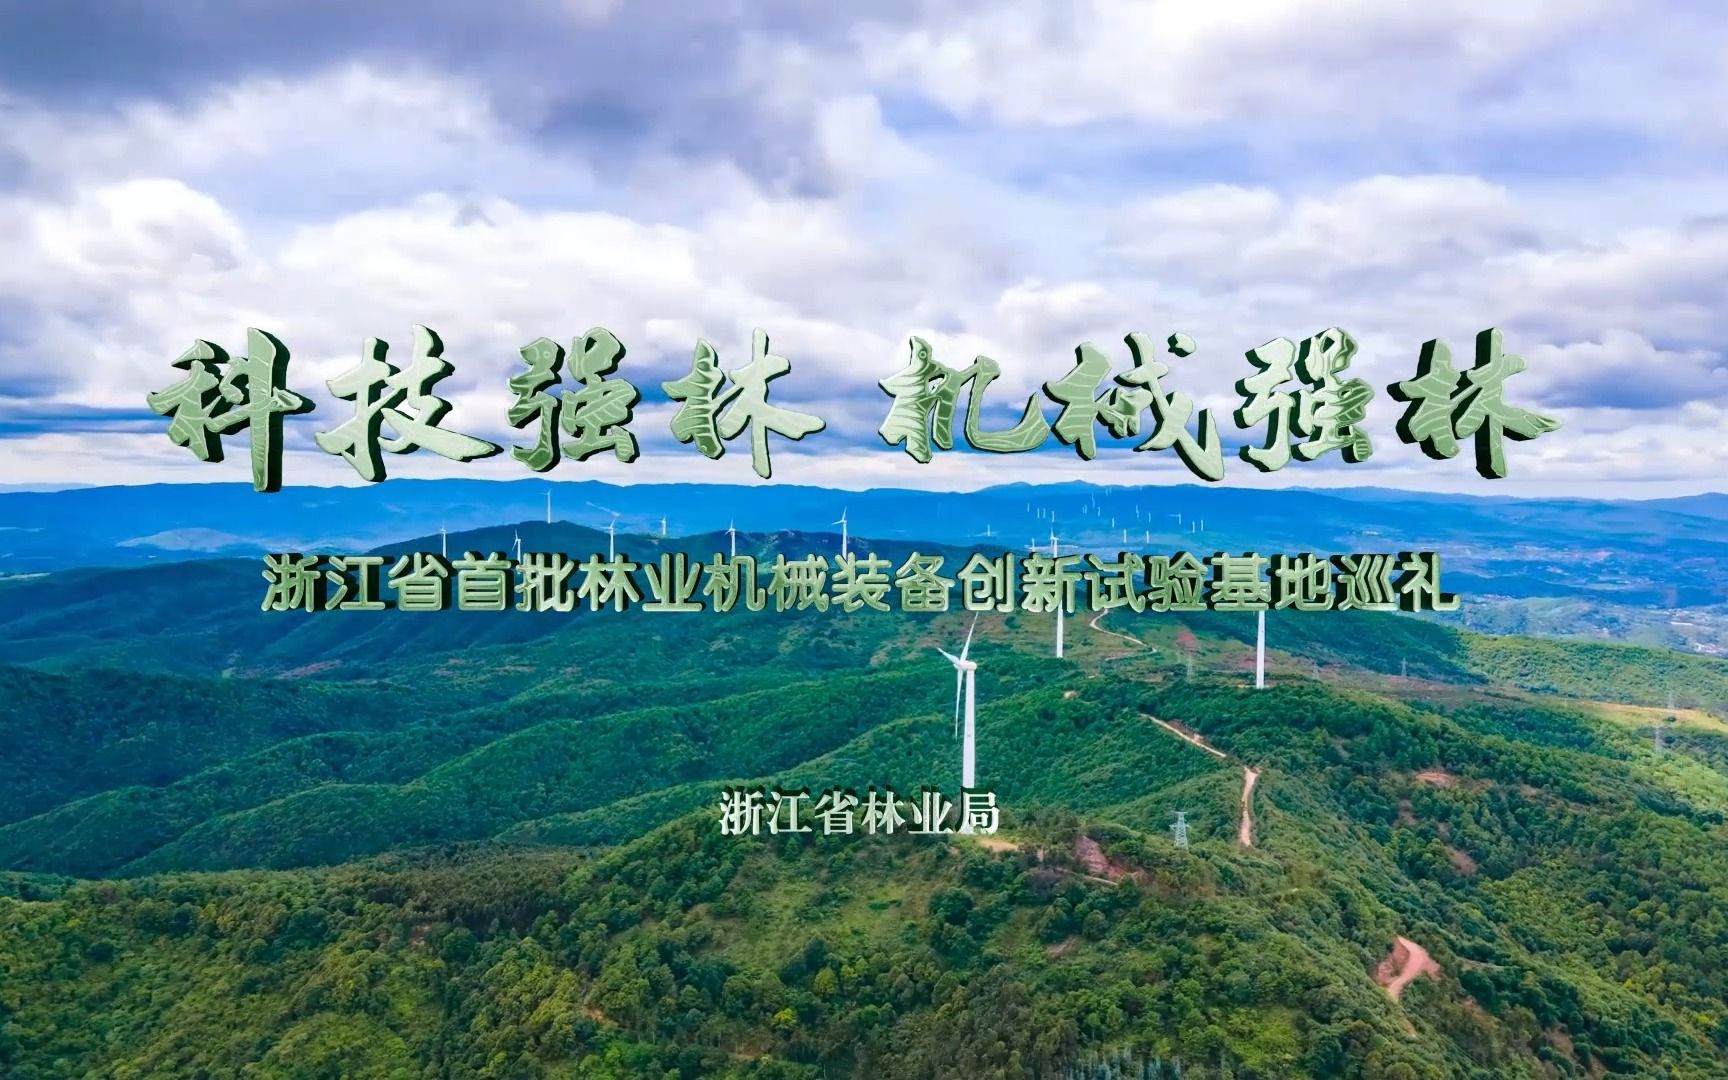 浙江省首批林业机械装备创新试验基地巡礼